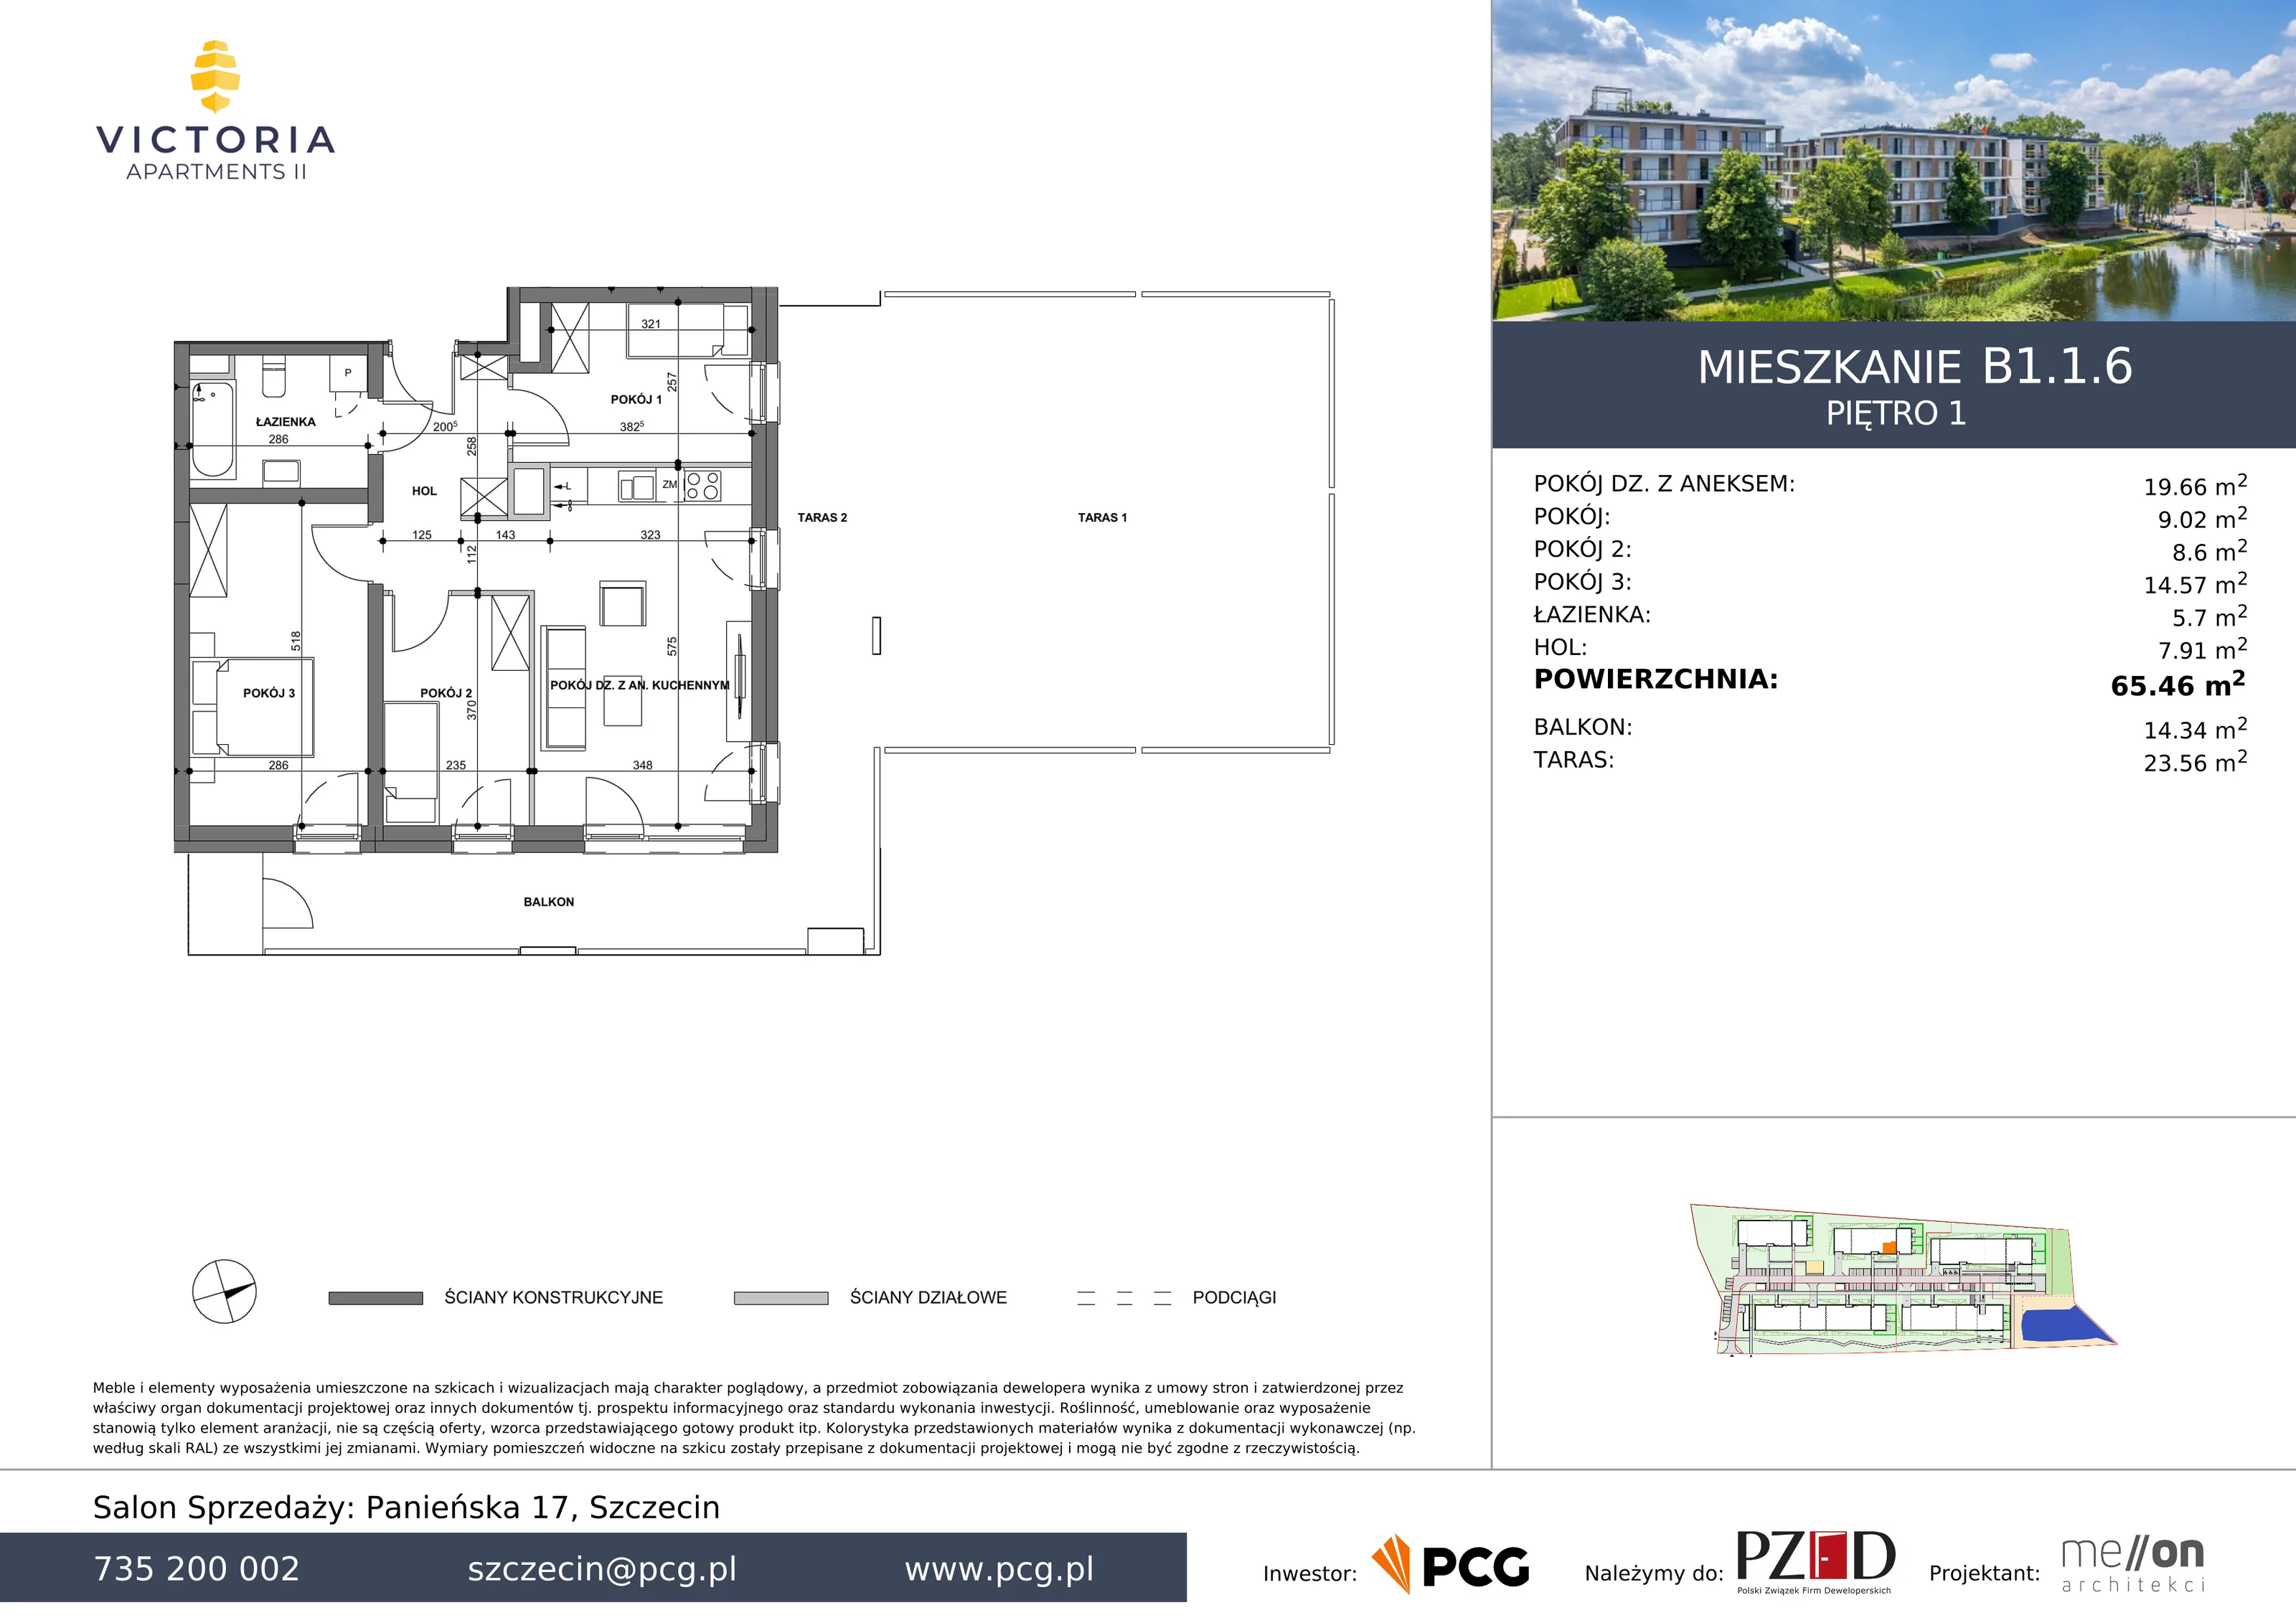 Apartament 65,46 m², piętro 1, oferta nr B1.1.6, Victoria Apartments II, Szczecin, Prawobrzeże, Dąbie, ul. Przestrzenna